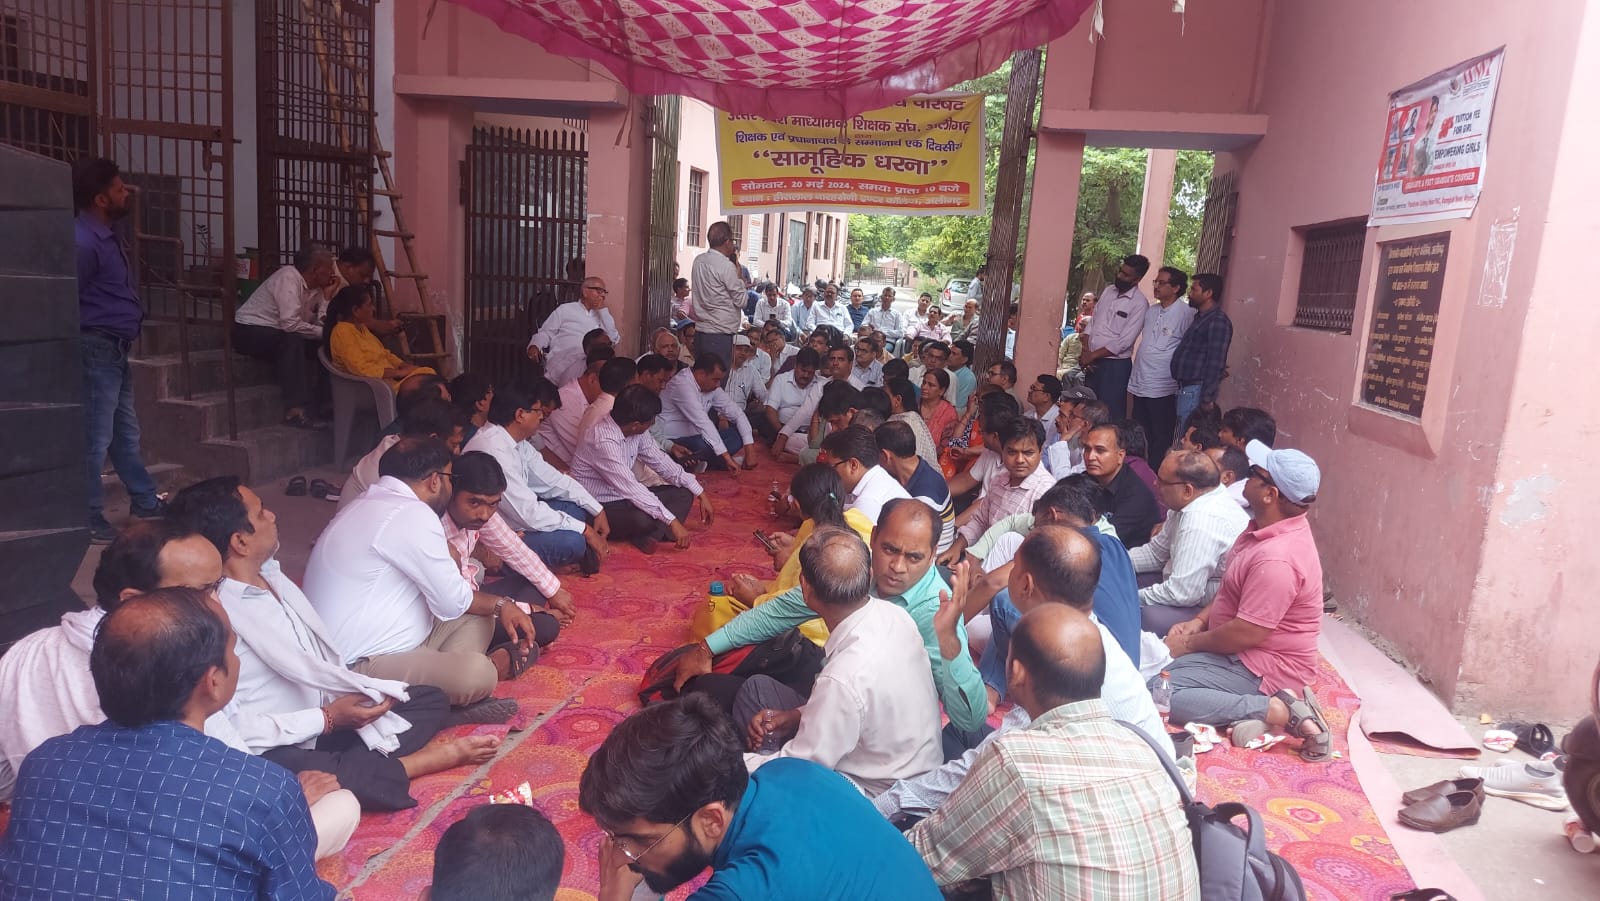 अलीगढ़ - प्रधानाचार्य के साथ मारपीट करने वाले आरोपियों की गिरफ्तारी की मांग को लेकर शिक्षकों ने किया प्रदर्शन